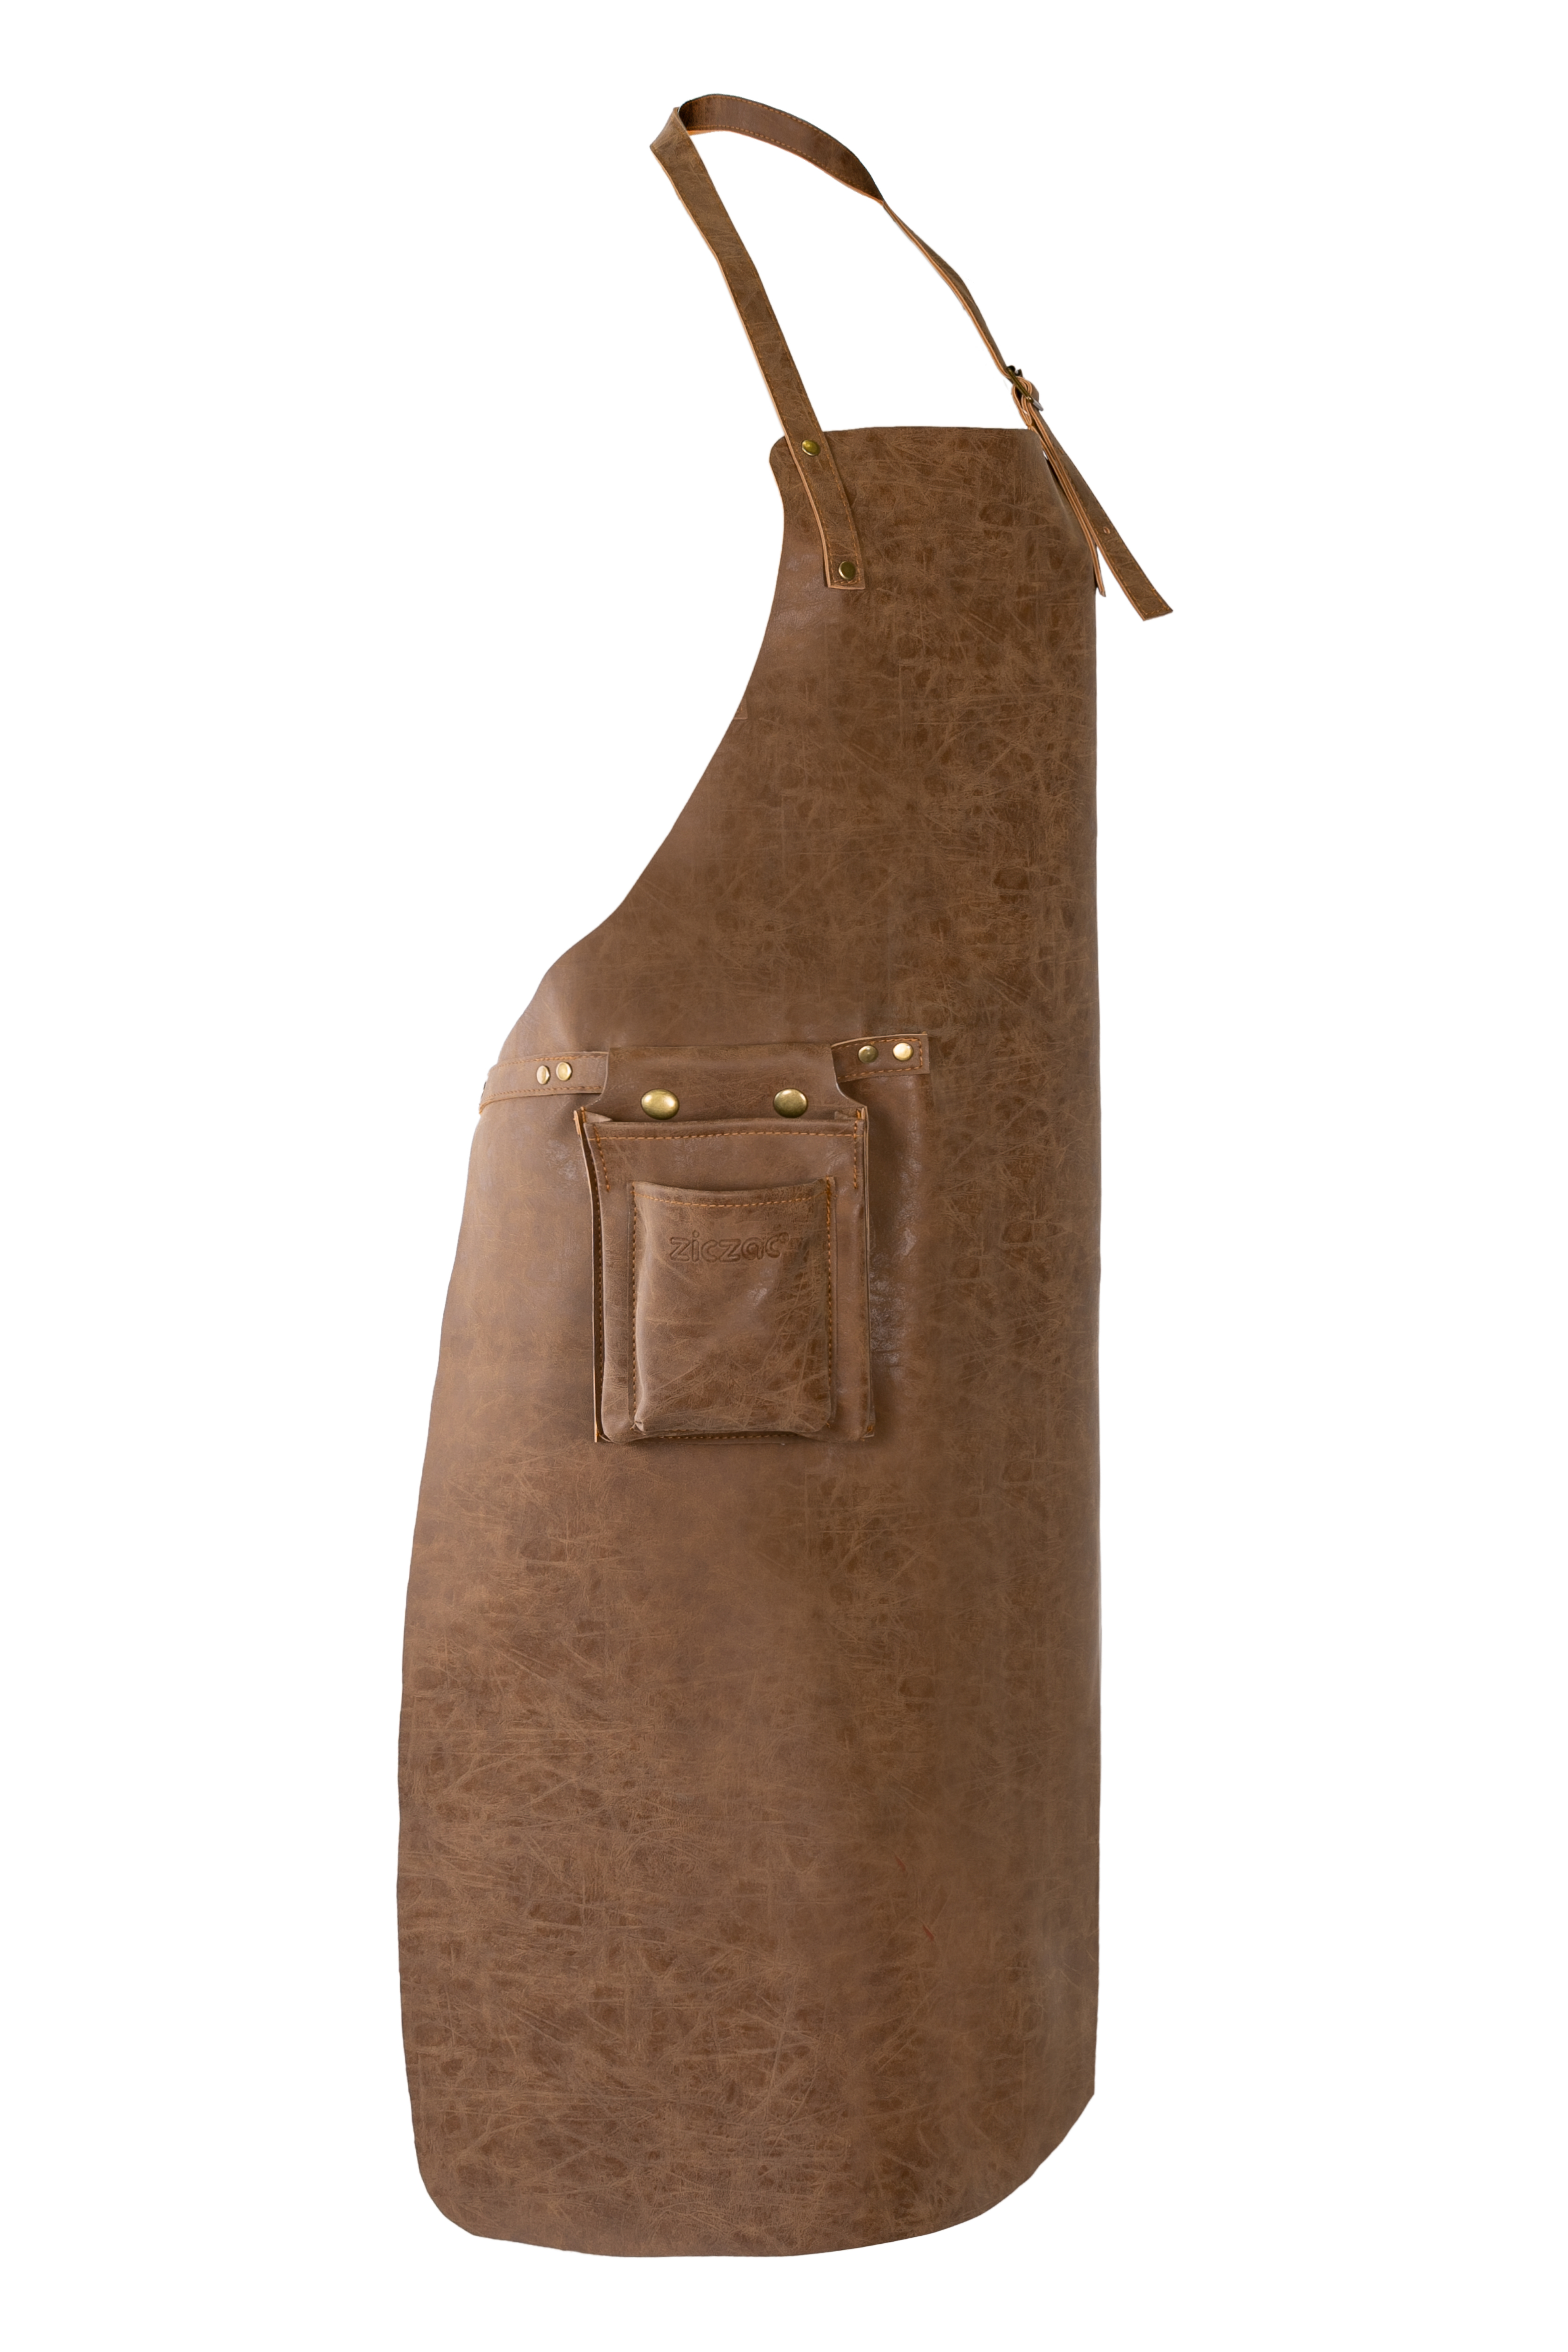 Tablier TRUMAN (Towel loop - no pocket - opt. Accessory bag), 70x90 cm, walnut